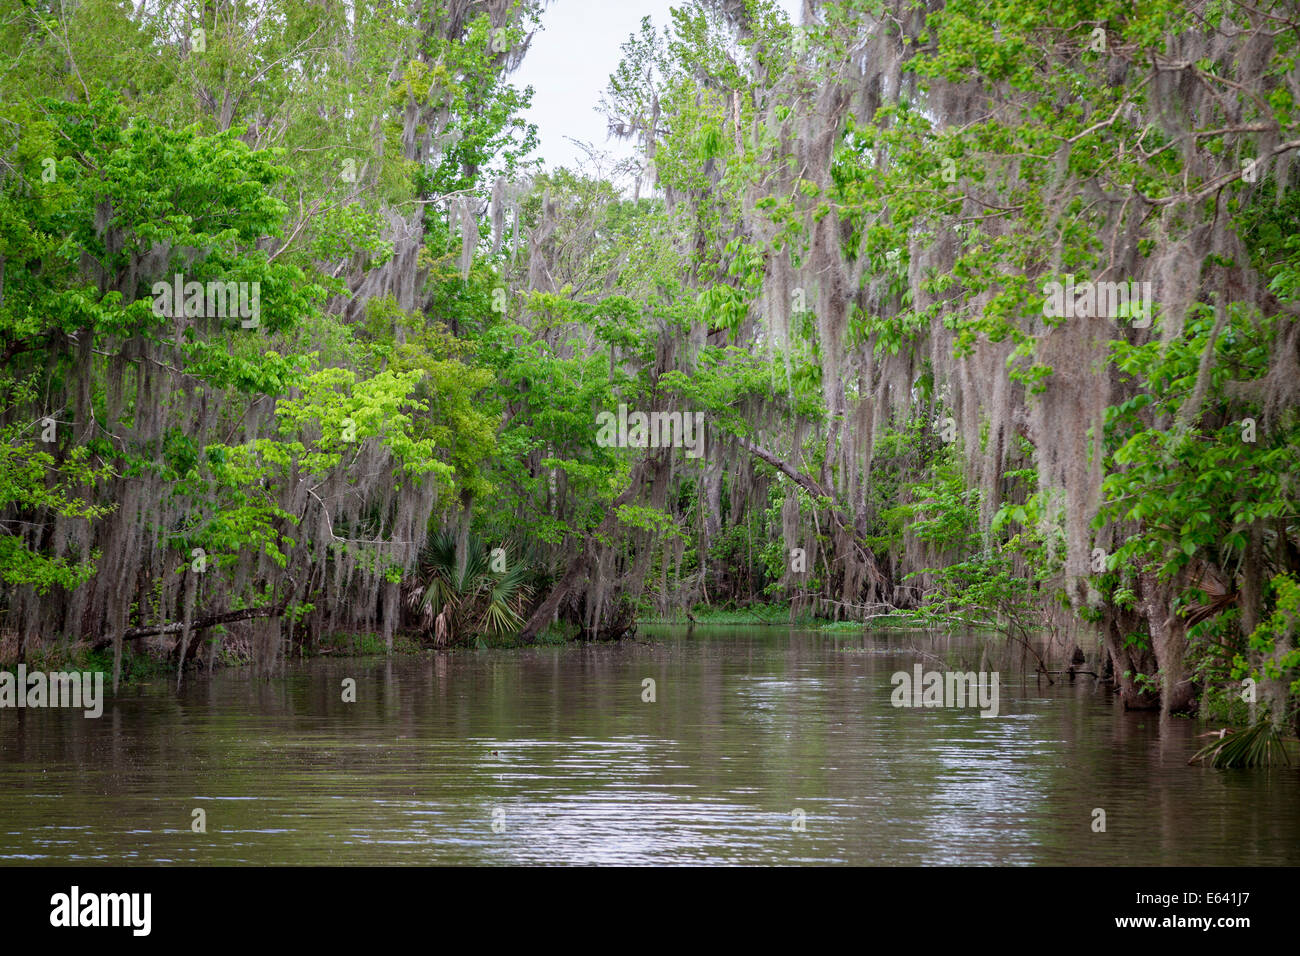 Muschio spagnolo (Tillandsia usneoides) cresce sugli alberi, palude, Louisiana, Stati Uniti Foto Stock